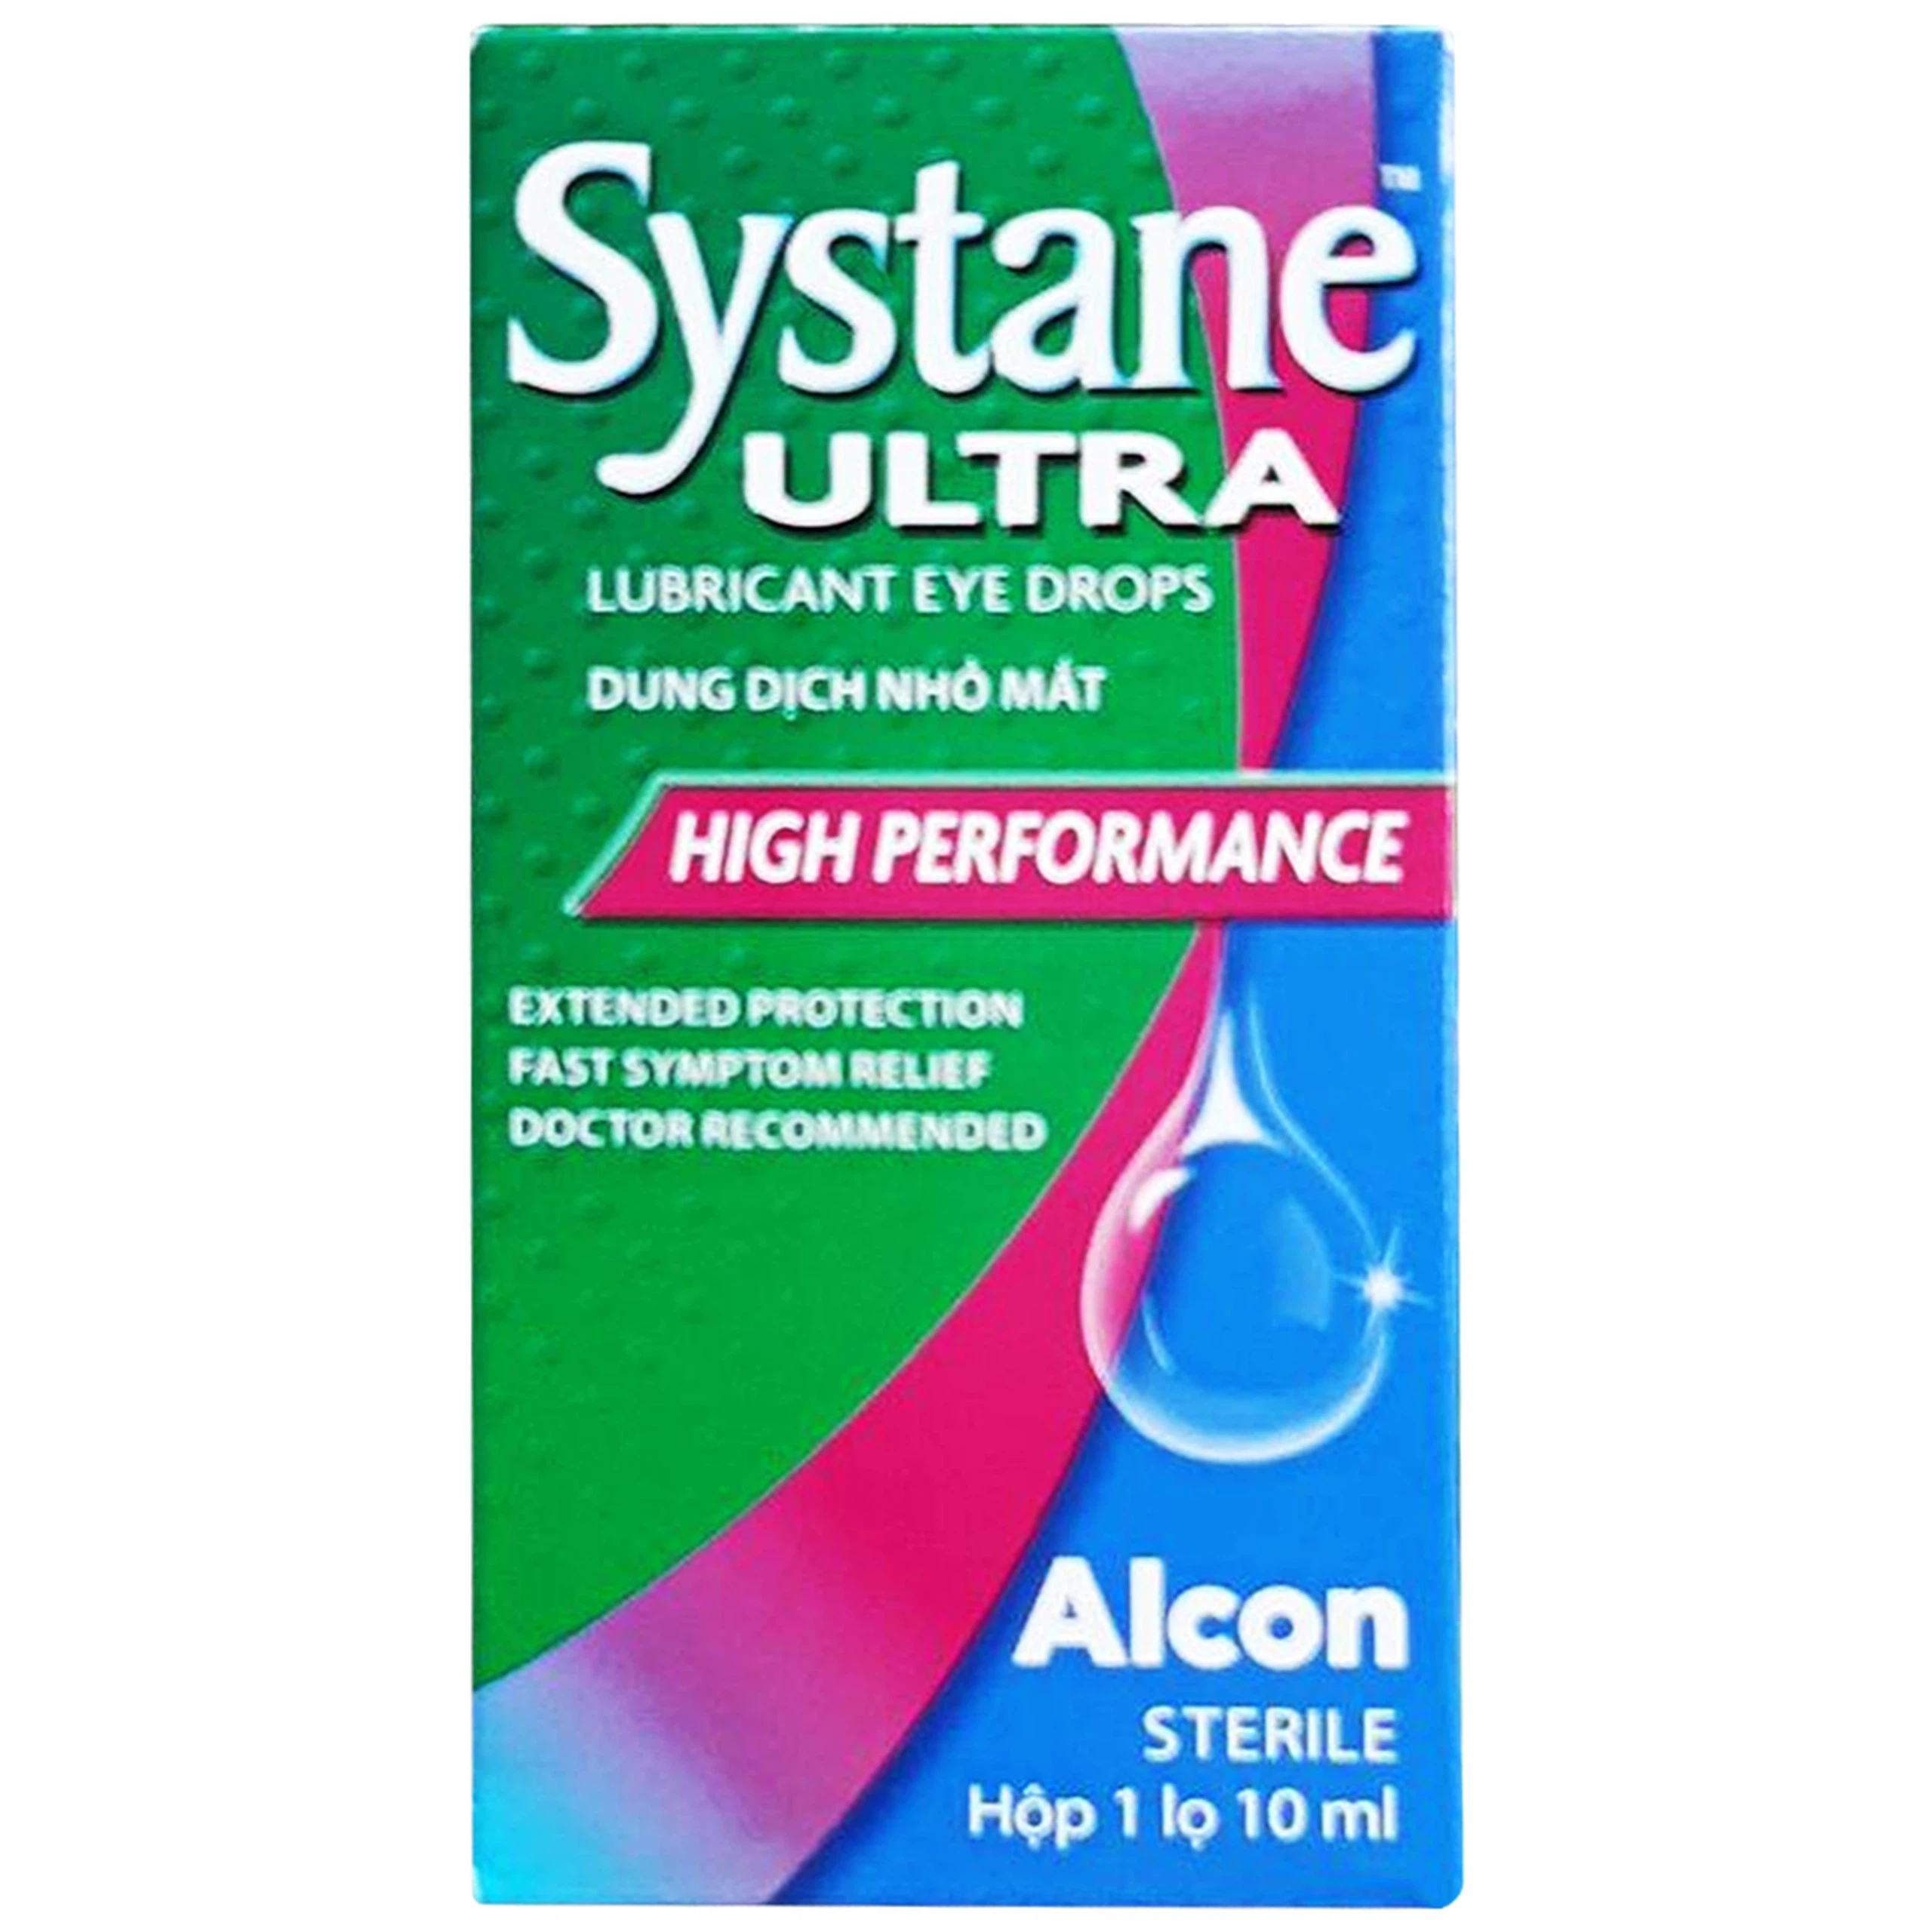 Thuốc nhỏ mắt Systane Ultra Alcon giảm các chứng rát và kích ứng do khô mắt (10ml)